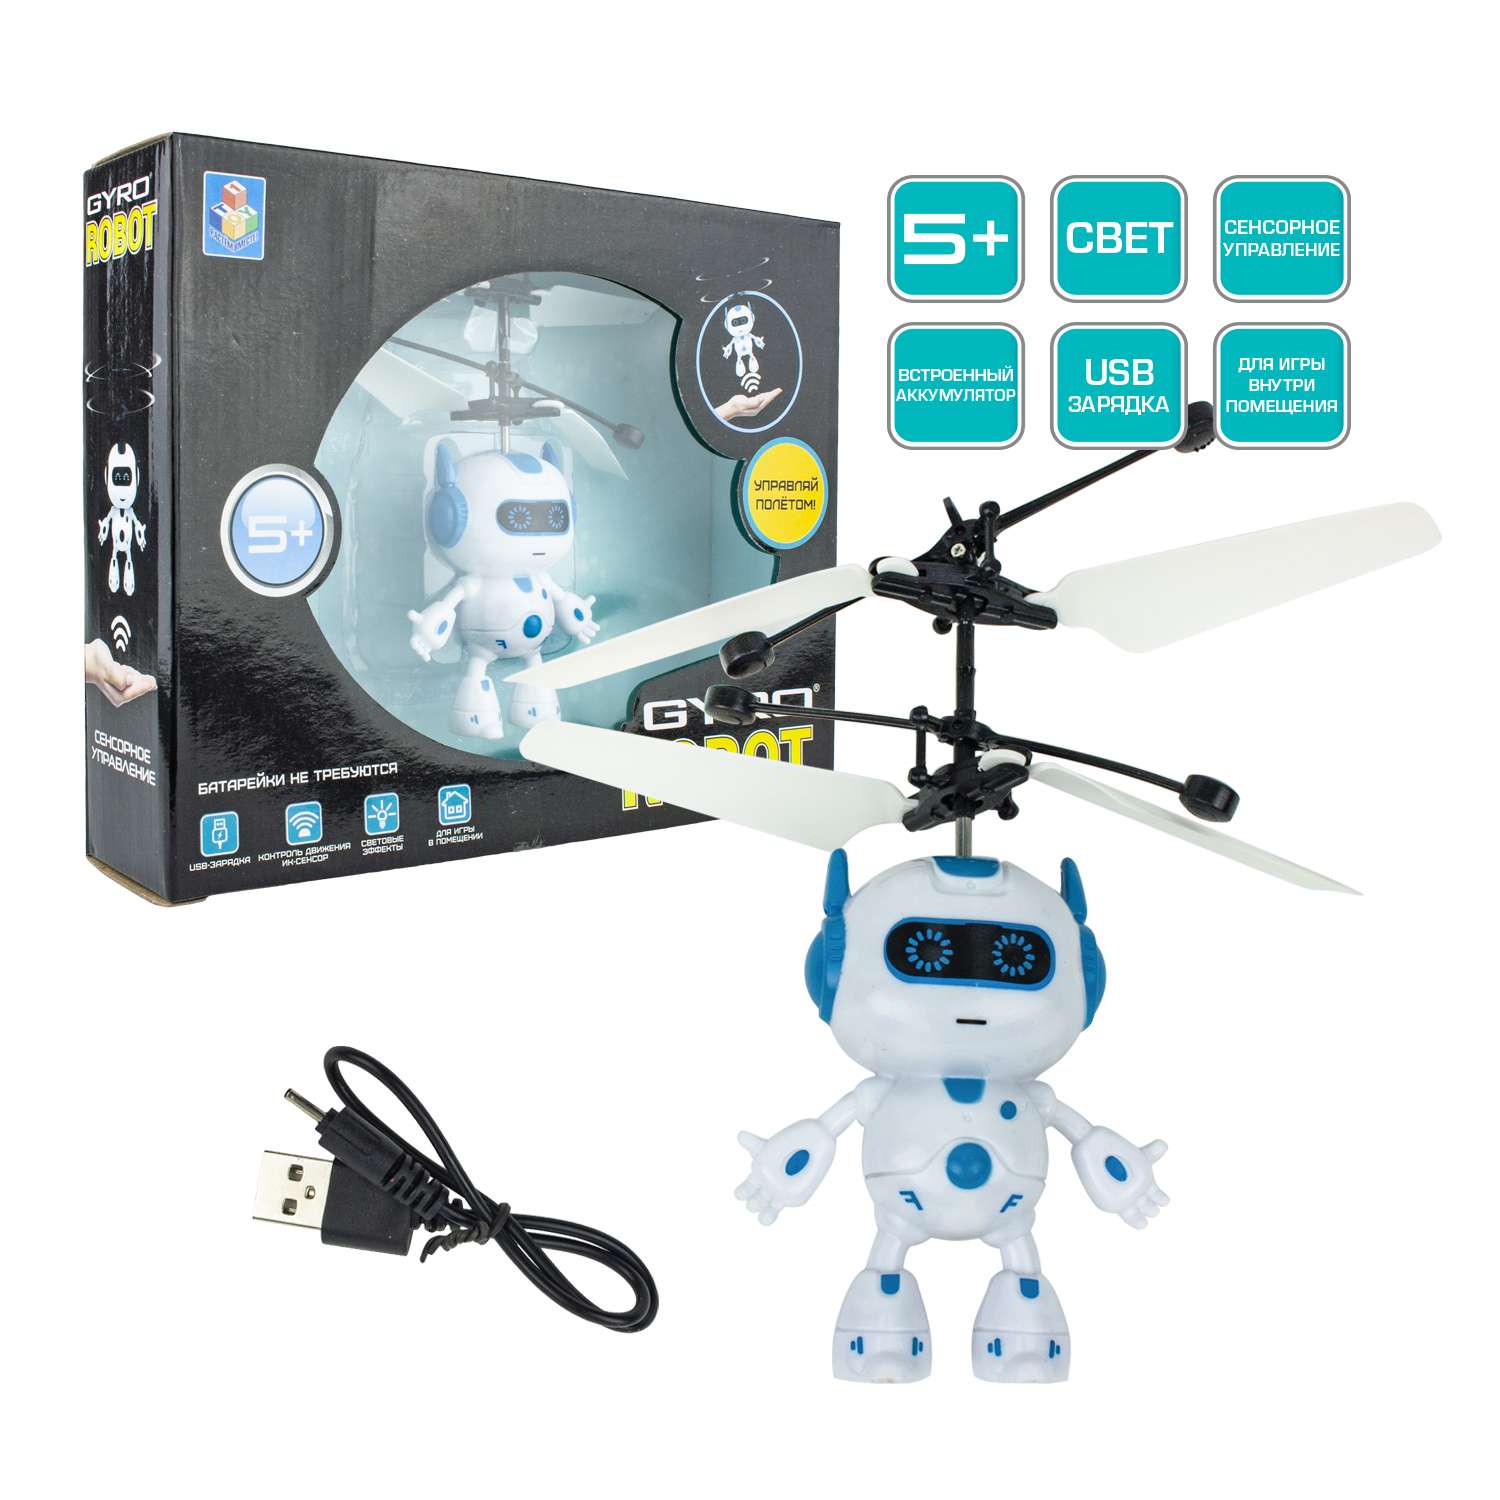 Интерактивная игрушка 1TOY Gyro-Robot на сенсорном управлении со световыми эффектами - фото 2